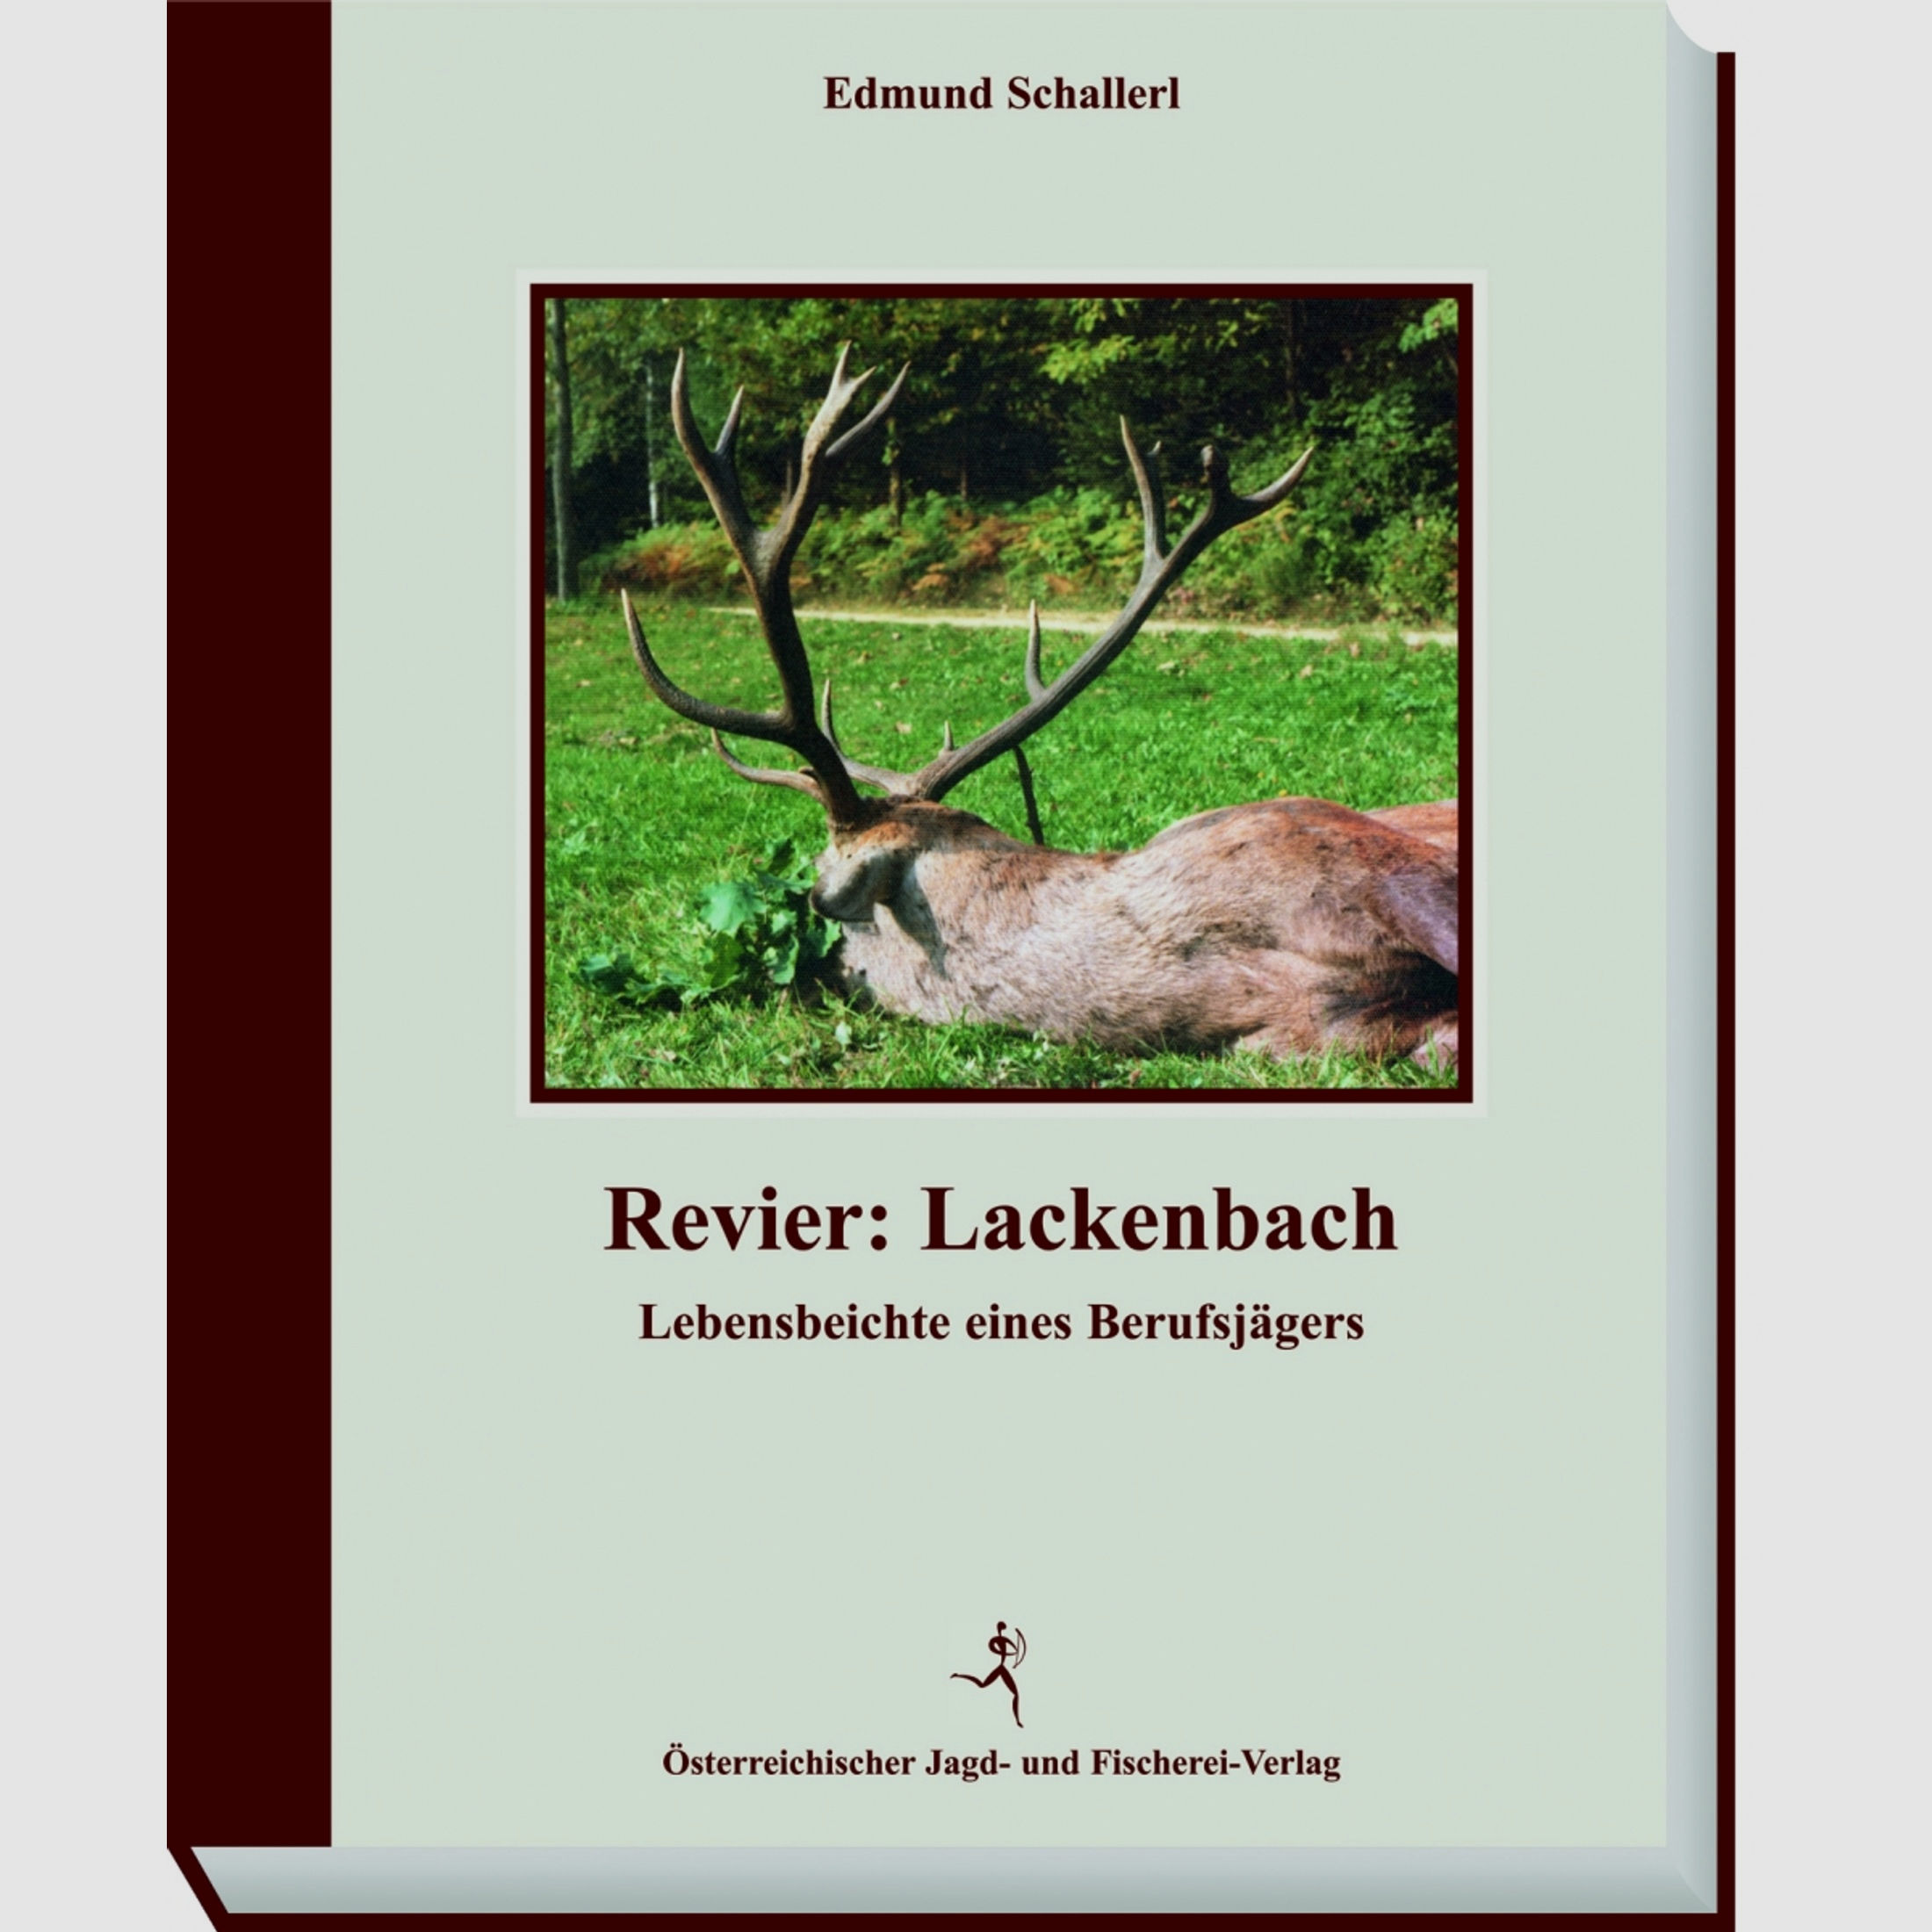 Schallerl - Revier Lackenbach